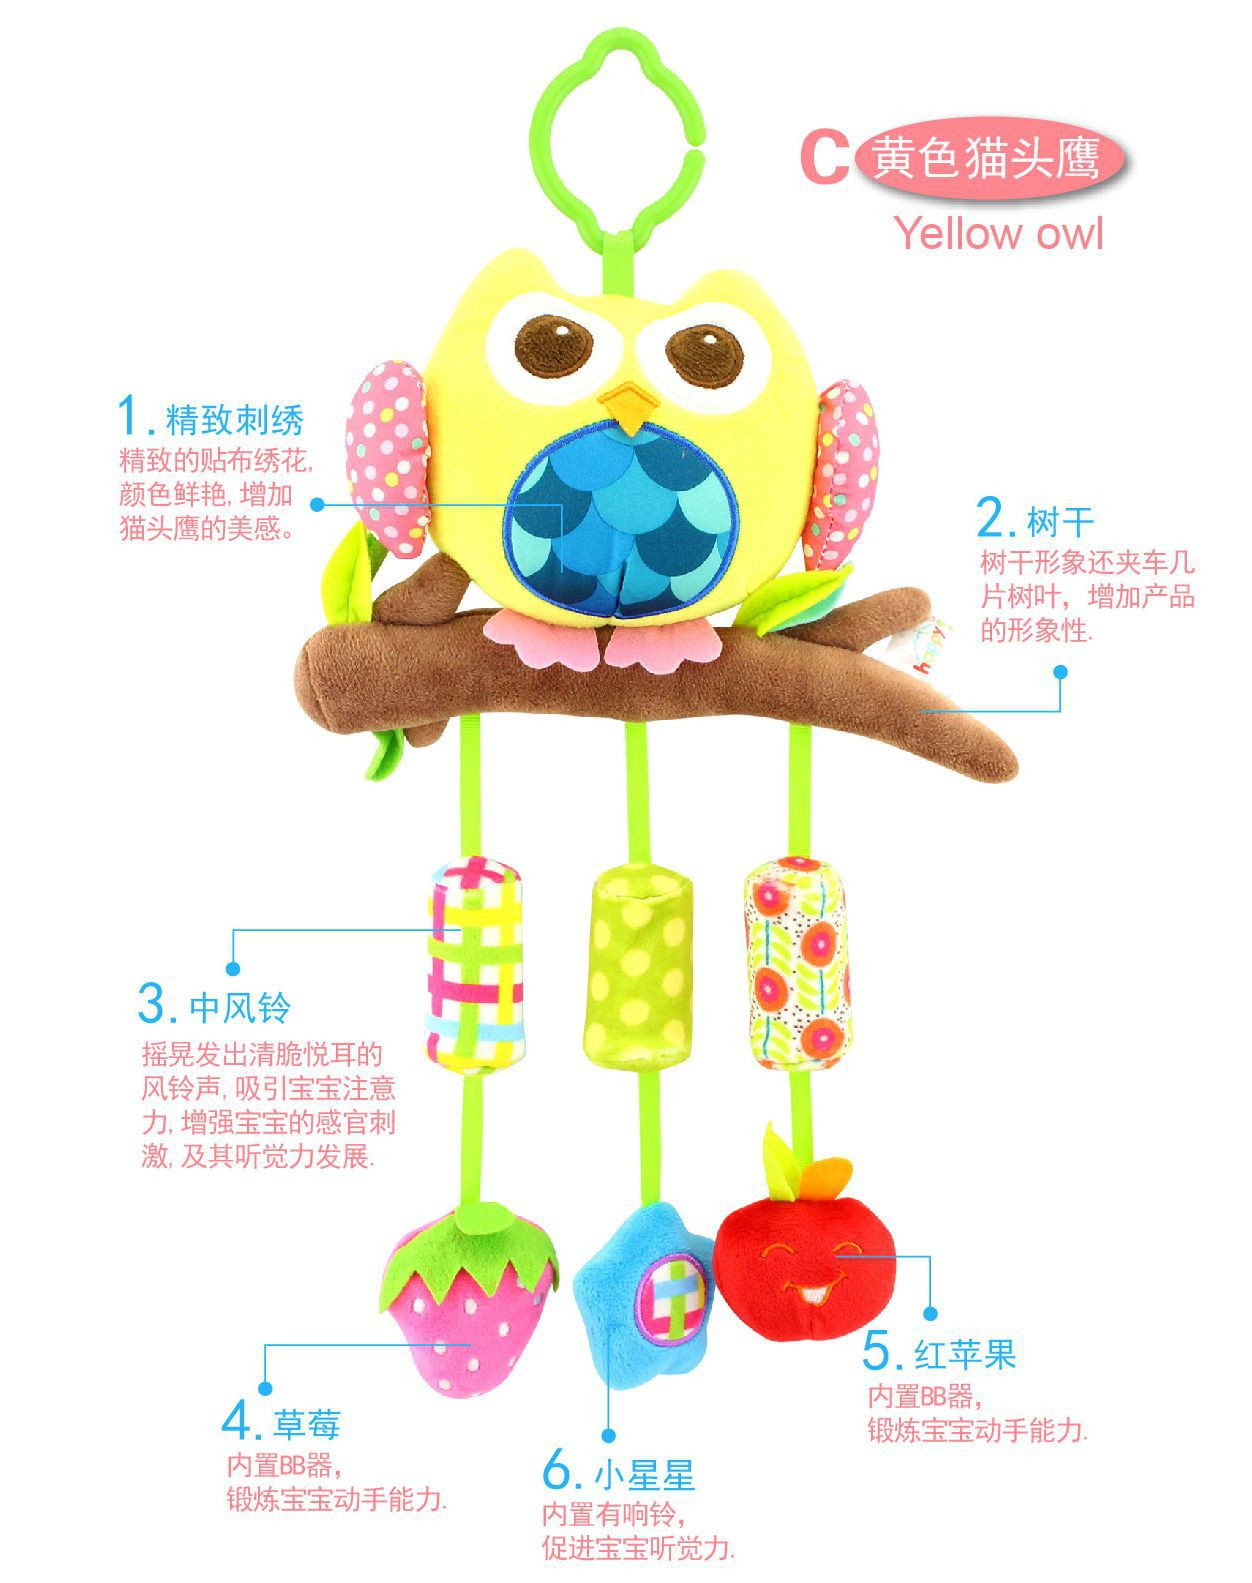 \"开心美猴王景宝婴儿玩具-毛绒摇铃早教玩具-动物造型风铃,产品编号H168020-4\"/